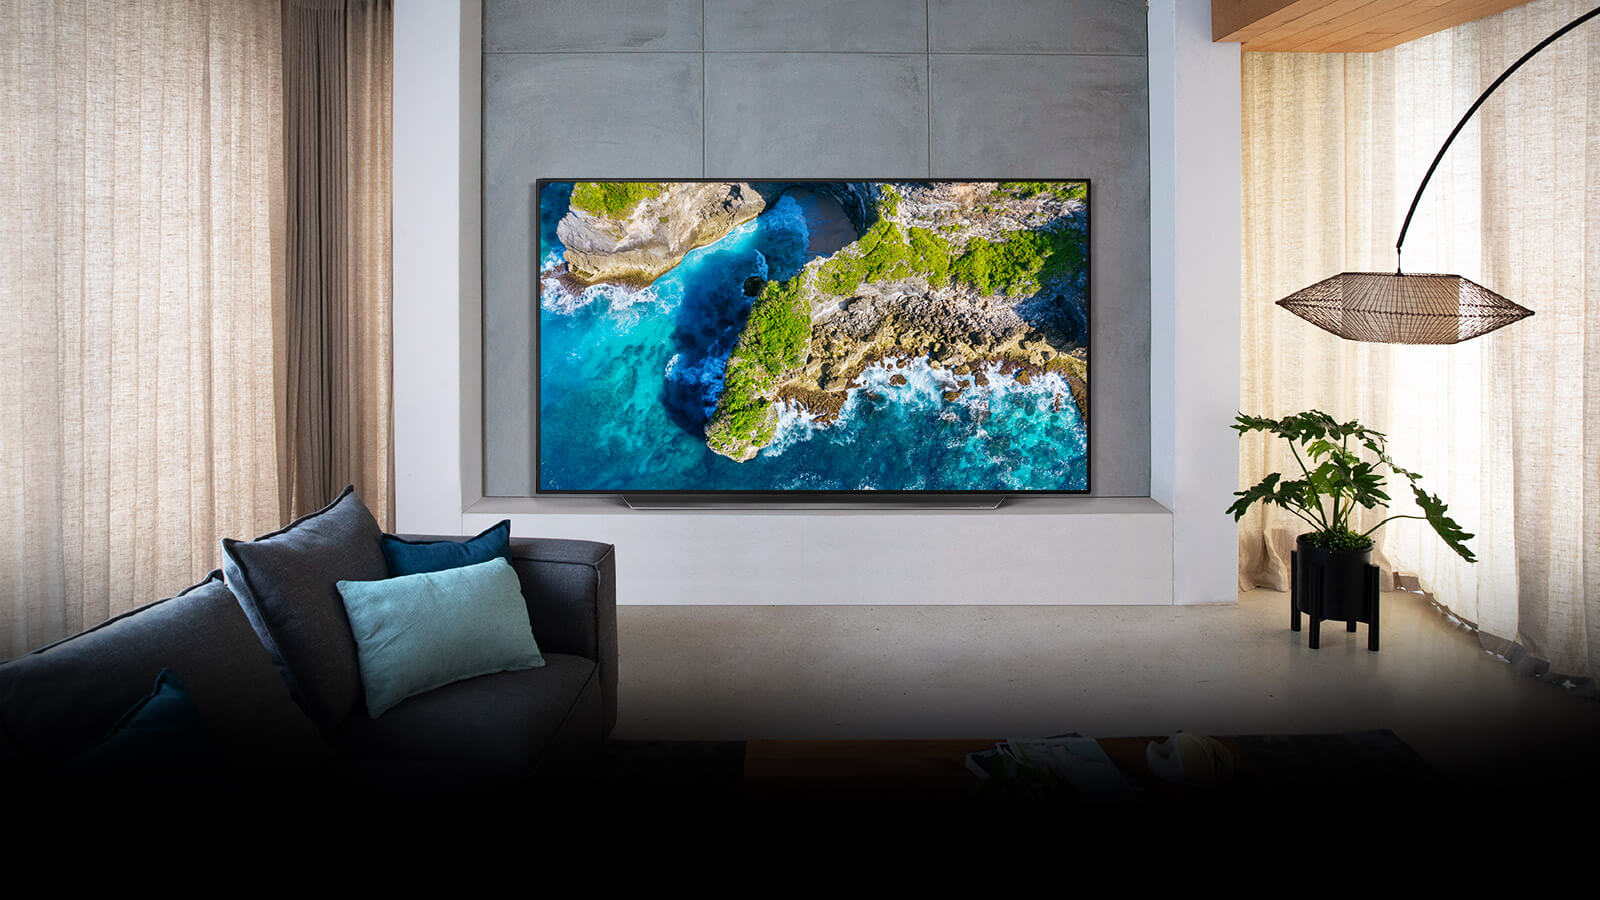 Ein OLED-TV hängt an einer grauen Wand in einem sehr modernen Wohnzimmer. Der Bildschirm zeigt eine Luftaufnahme von Meer und grün bewachsenen Klippen, um die Brillanz der Farben zu verdeutlichen.